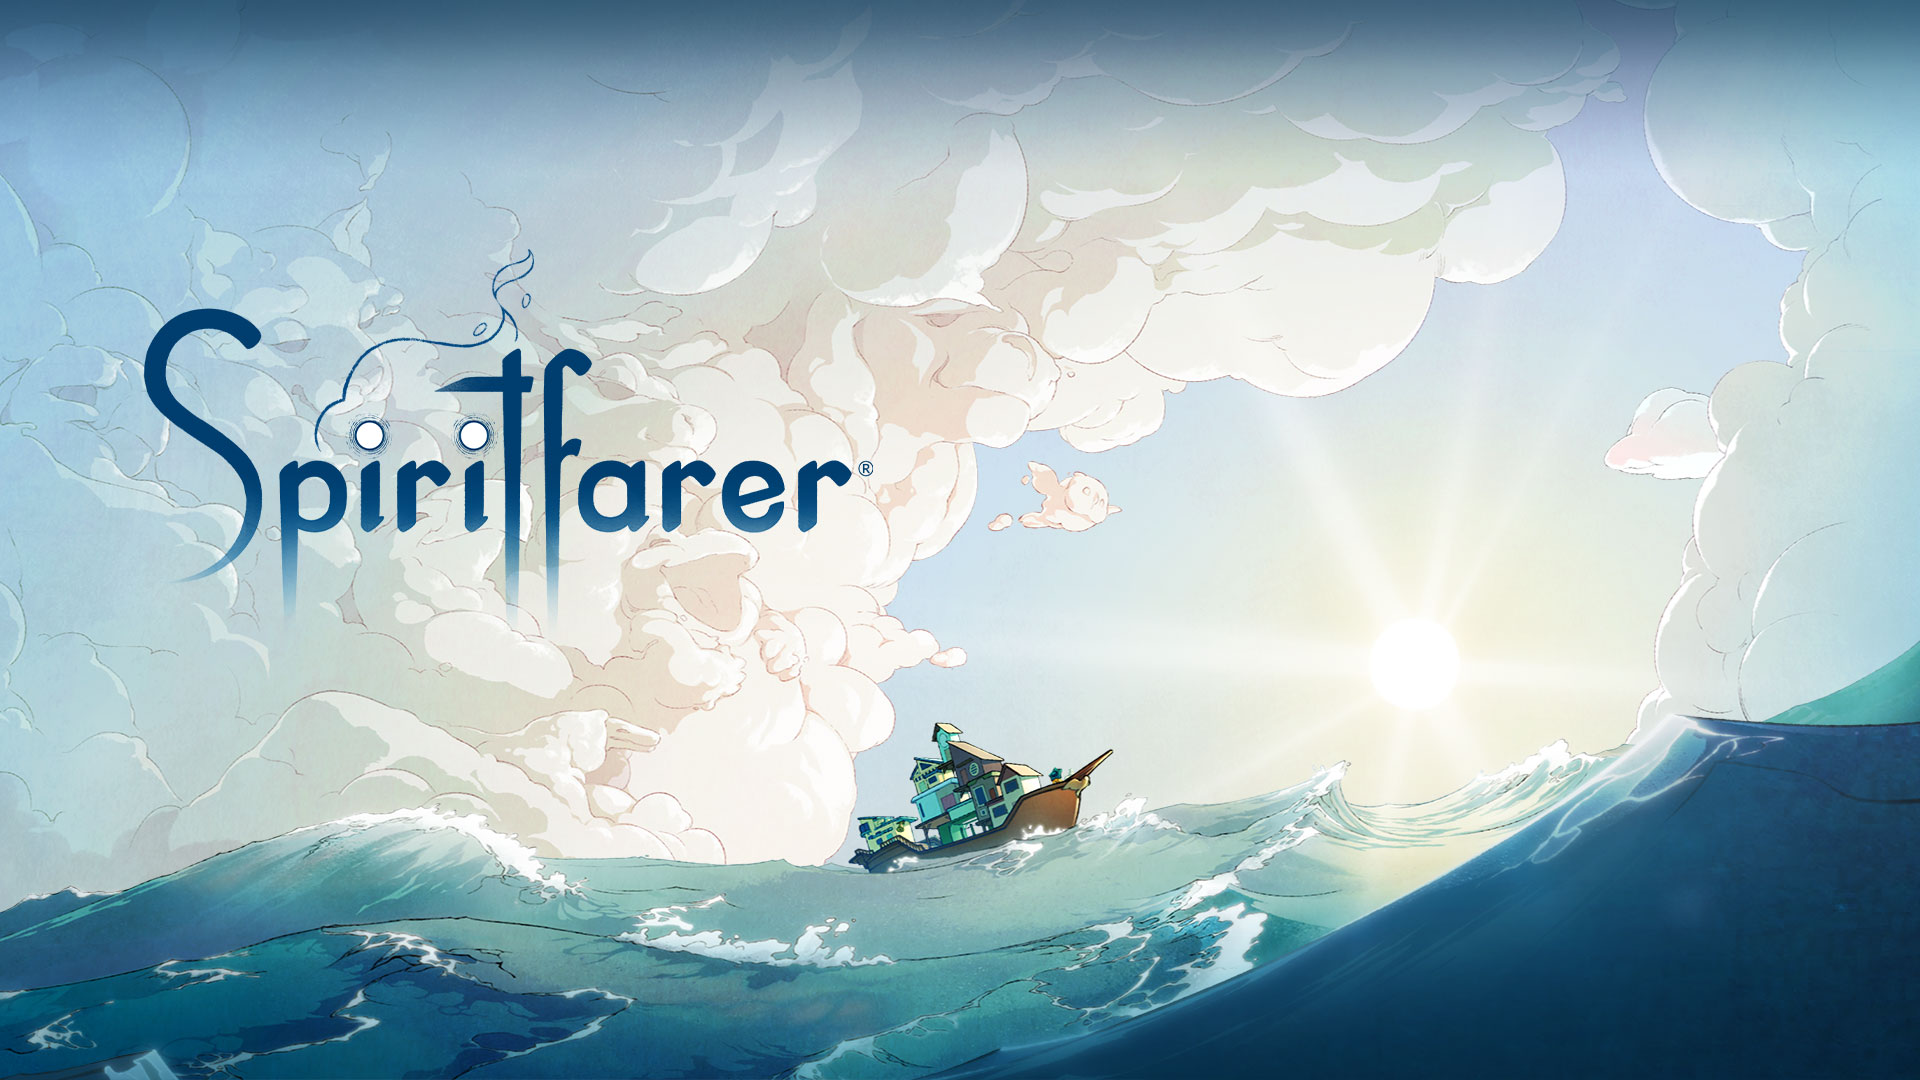 Logo Spiritfarer, bateau sur l'eau avec des nuages formant différents animaux